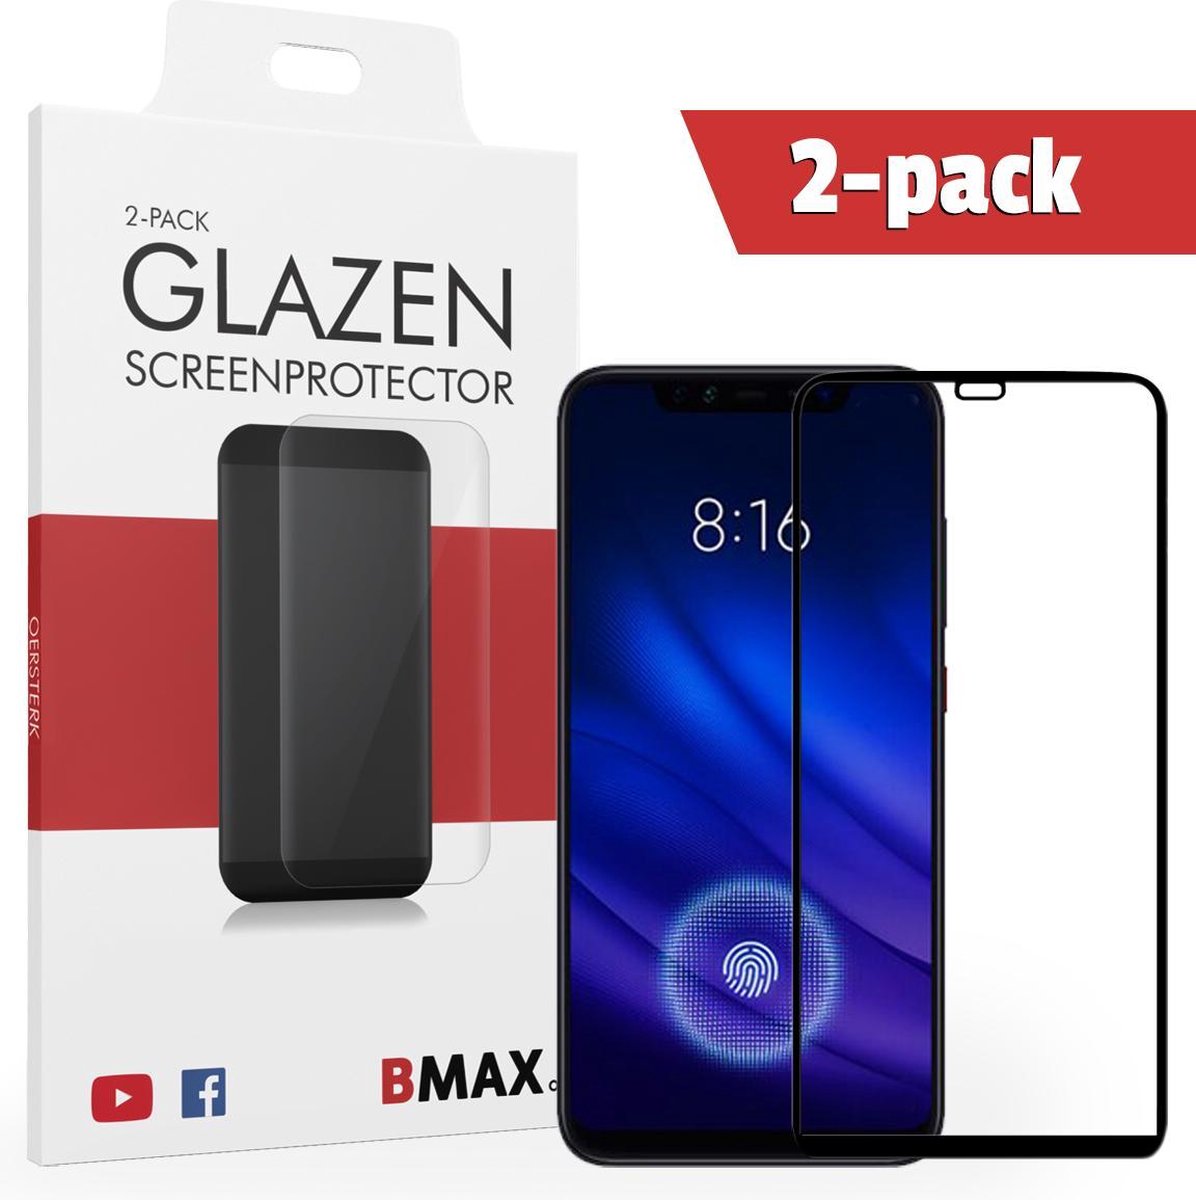 2-pack Bmax Xiaomi Mi 8 Pro Screenprotector - Glass - Full Cover 2.5d - Black